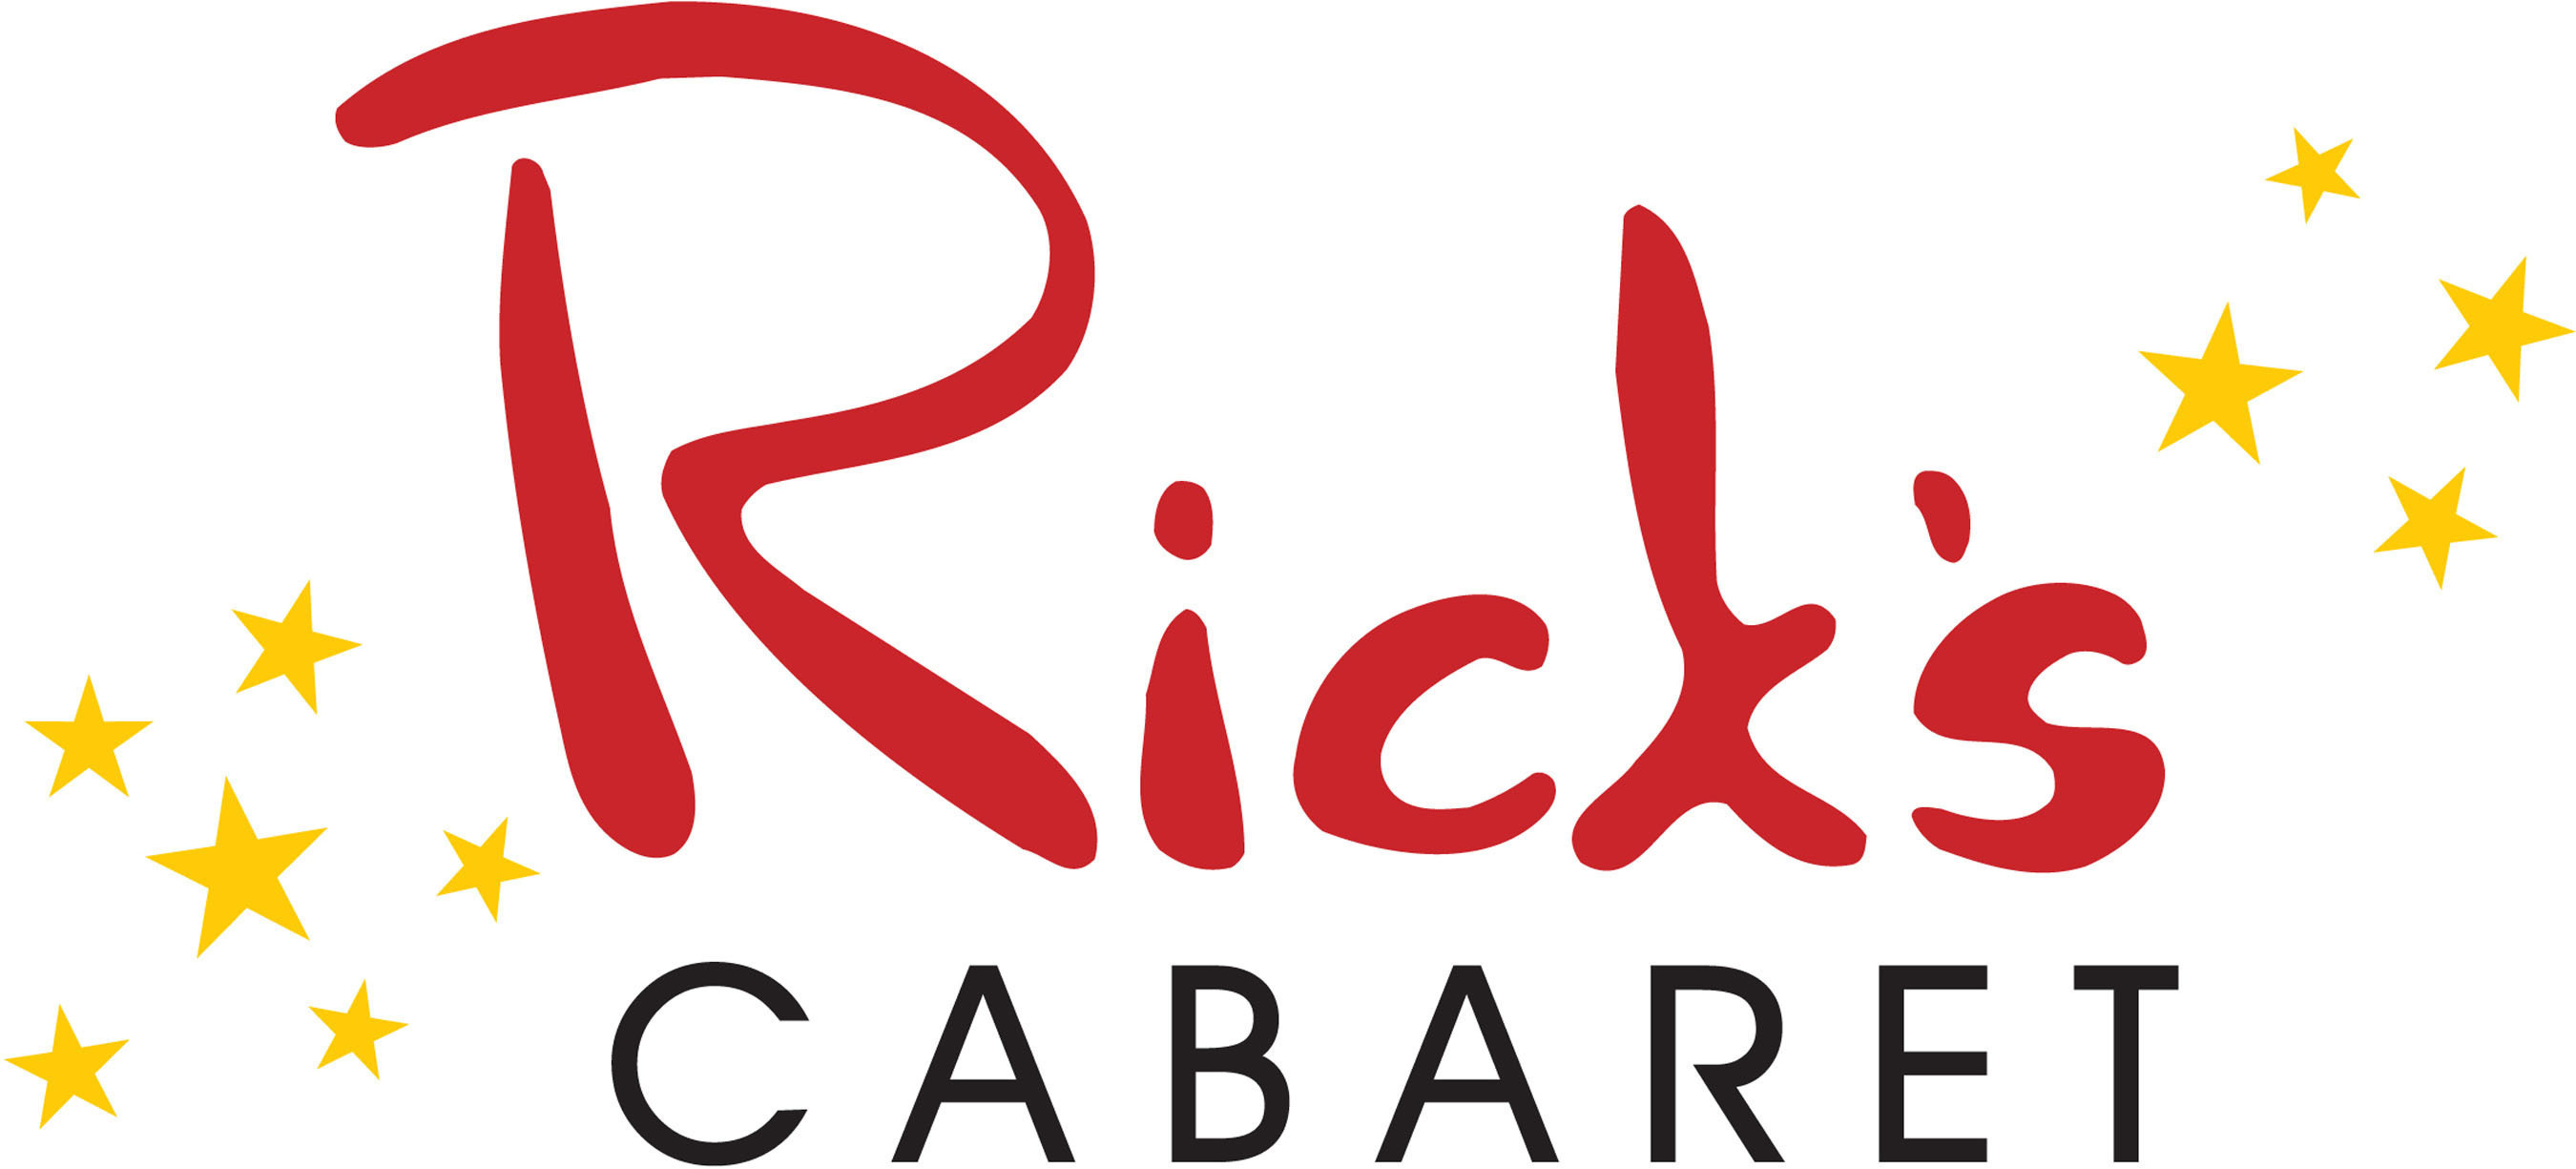 Rick's Cabaret Logo.